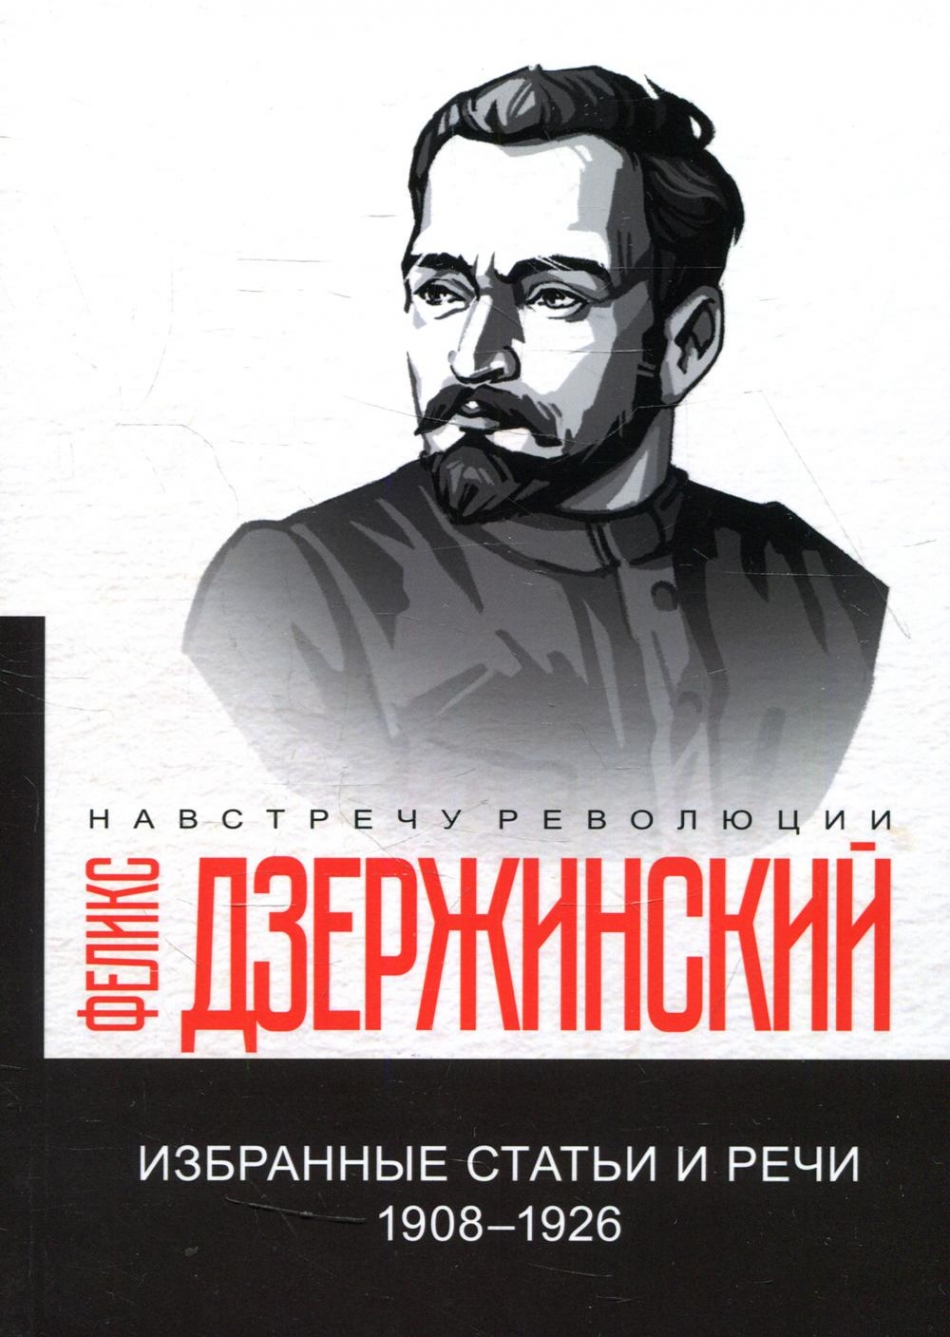 Дзержинский Ф.Э. Избранные статьи и речи. 1908-1926 (репринтное изд.) 